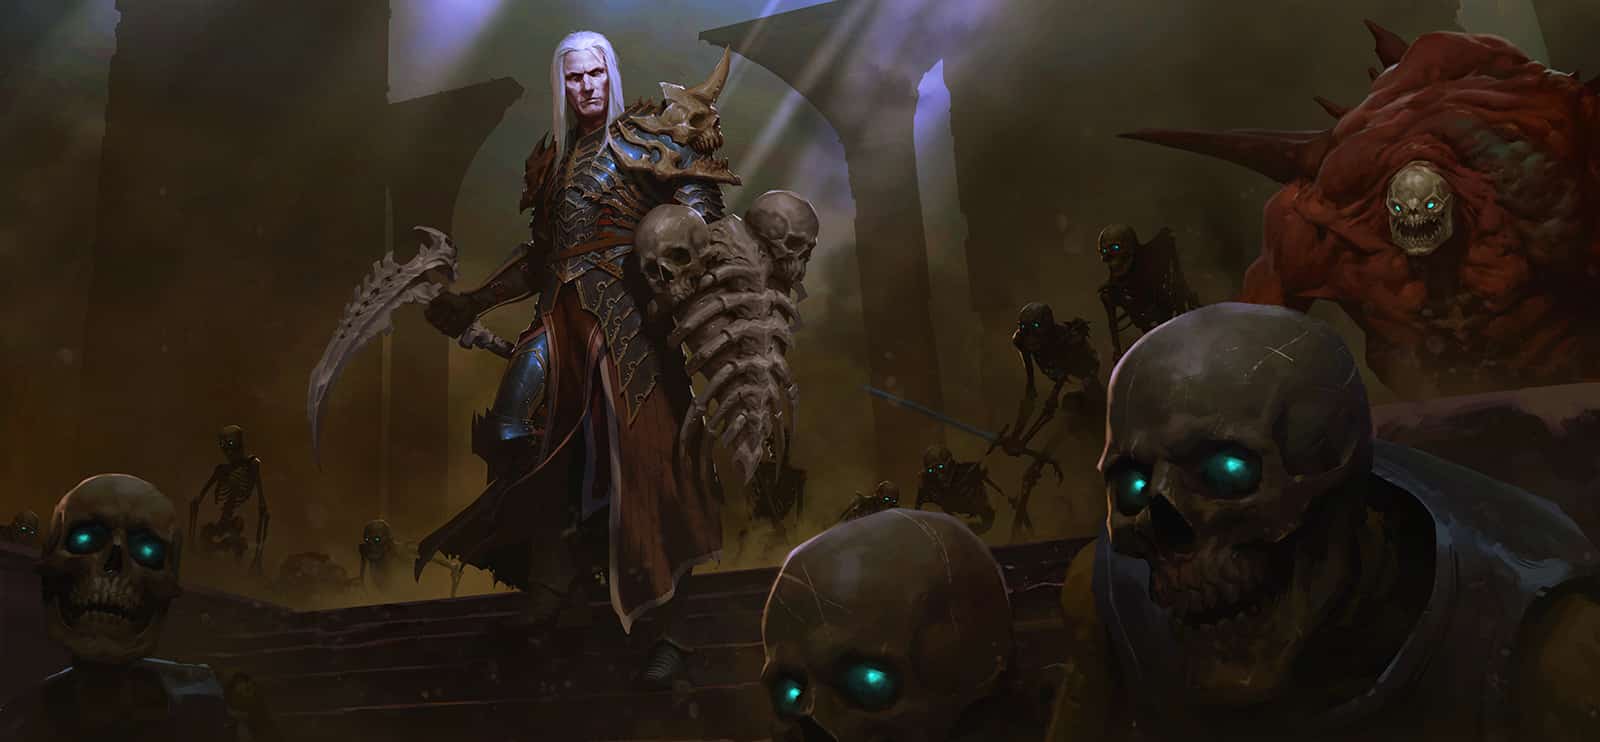 Artwork of the Male necromancer in Diablo 3